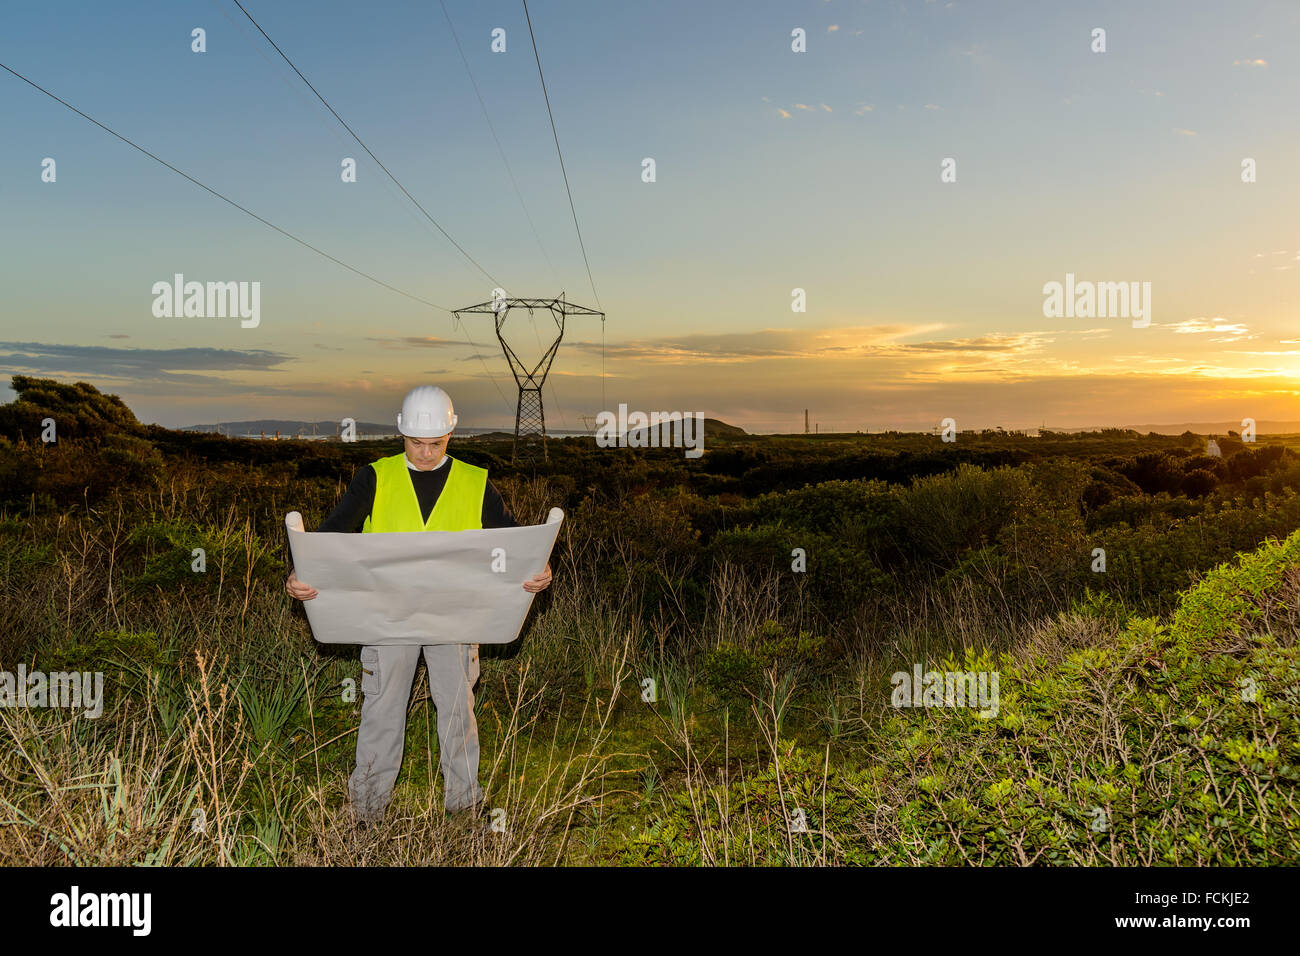 Ingénieur électrique, contrôle l'alimentation Line et les éoliennes au coucher du soleil en plein air à la campagne Banque D'Images